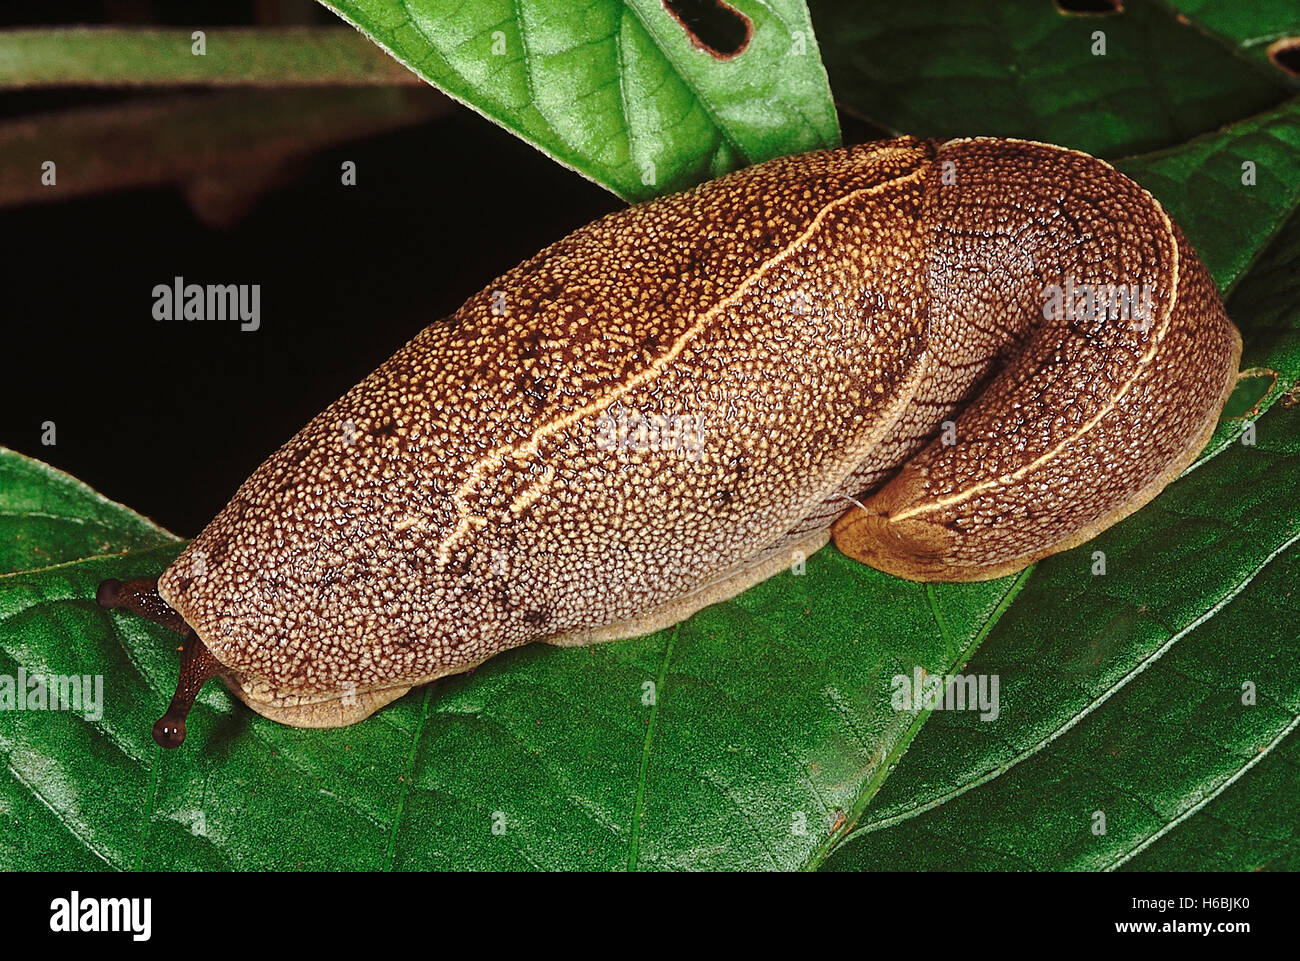 Slug. Familie: weichtiere. Eine Schnecke ist ein gastropode ohne Hülle. Diese besondere Slug wurde in der Nähe der anshi GHAT fotografiert, Indien. Stockfoto